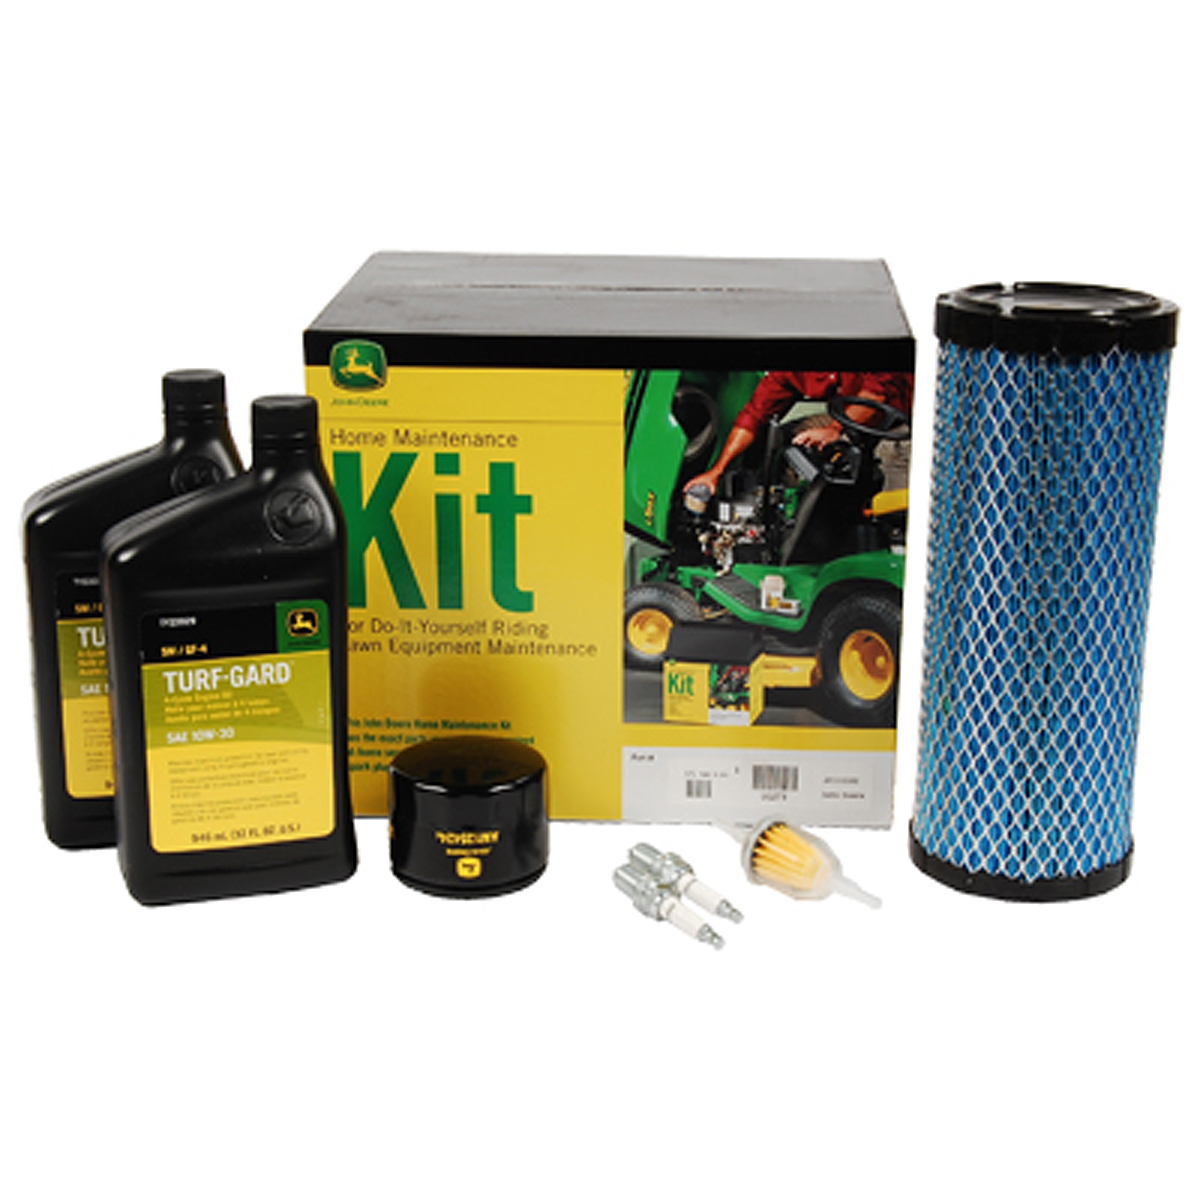 John Deere Home Maintenance Kit LG270 XUV 825i Gator for sale online 